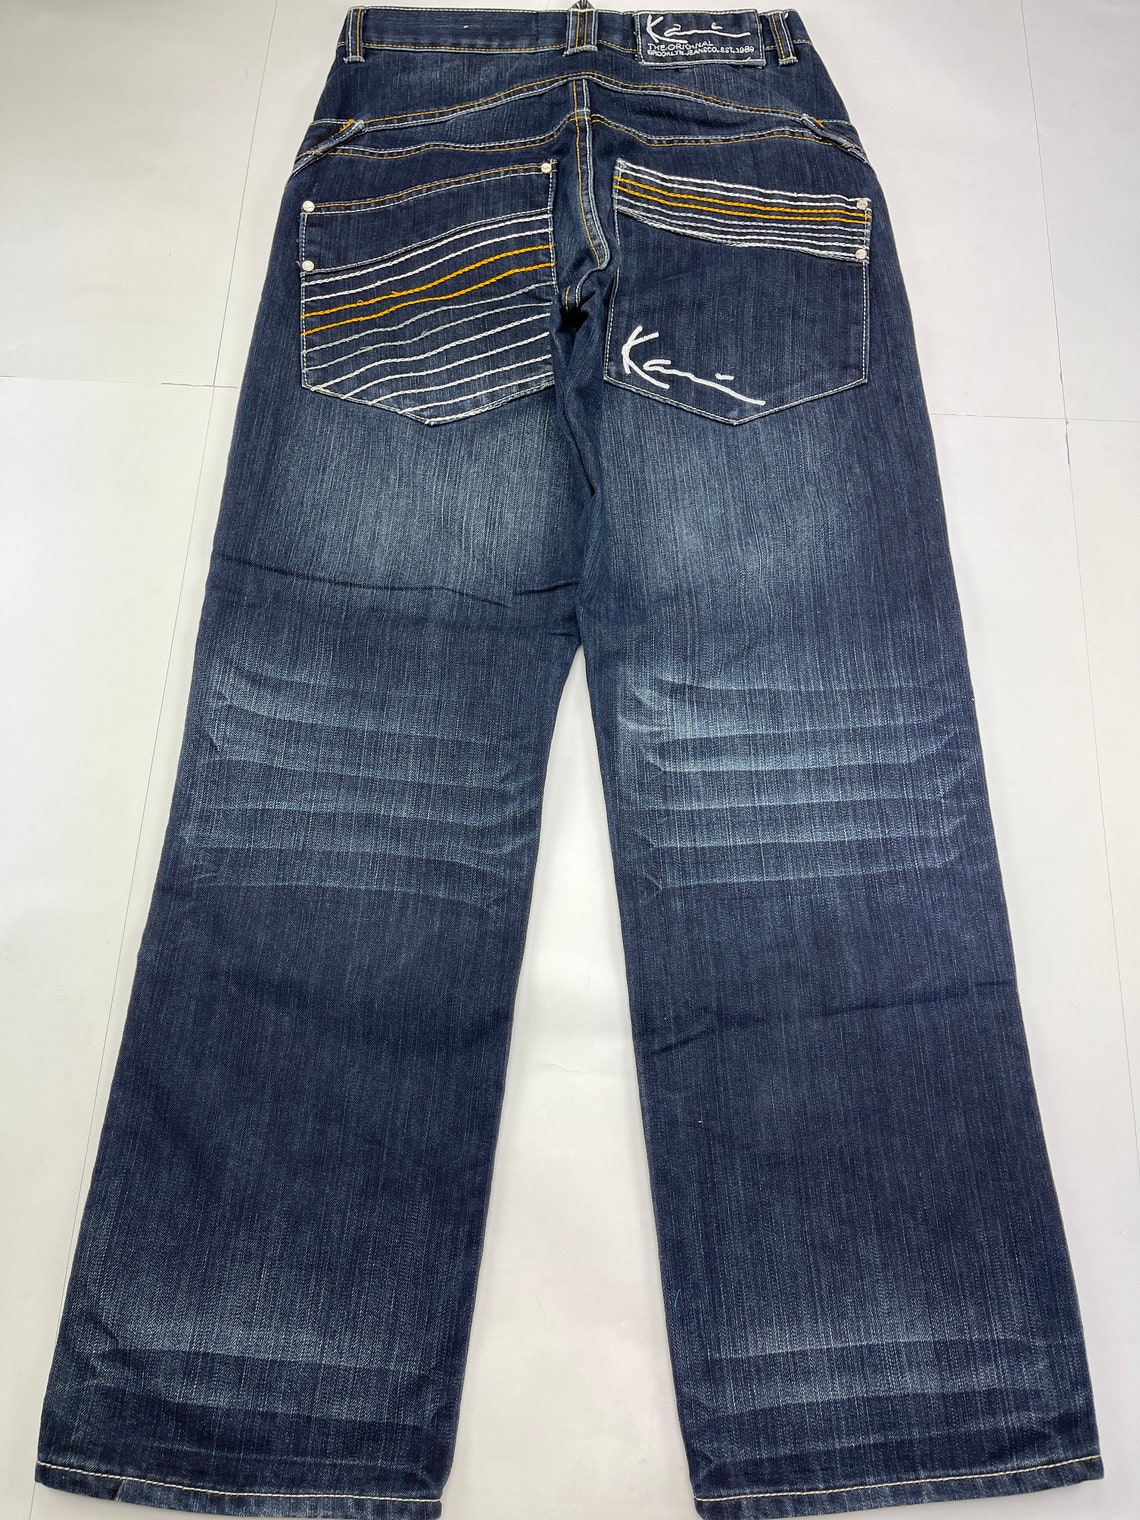 KARL KANI Jeans Vintage Baggy Kani Jeans Loose Blue 90s Hip - Etsy ...